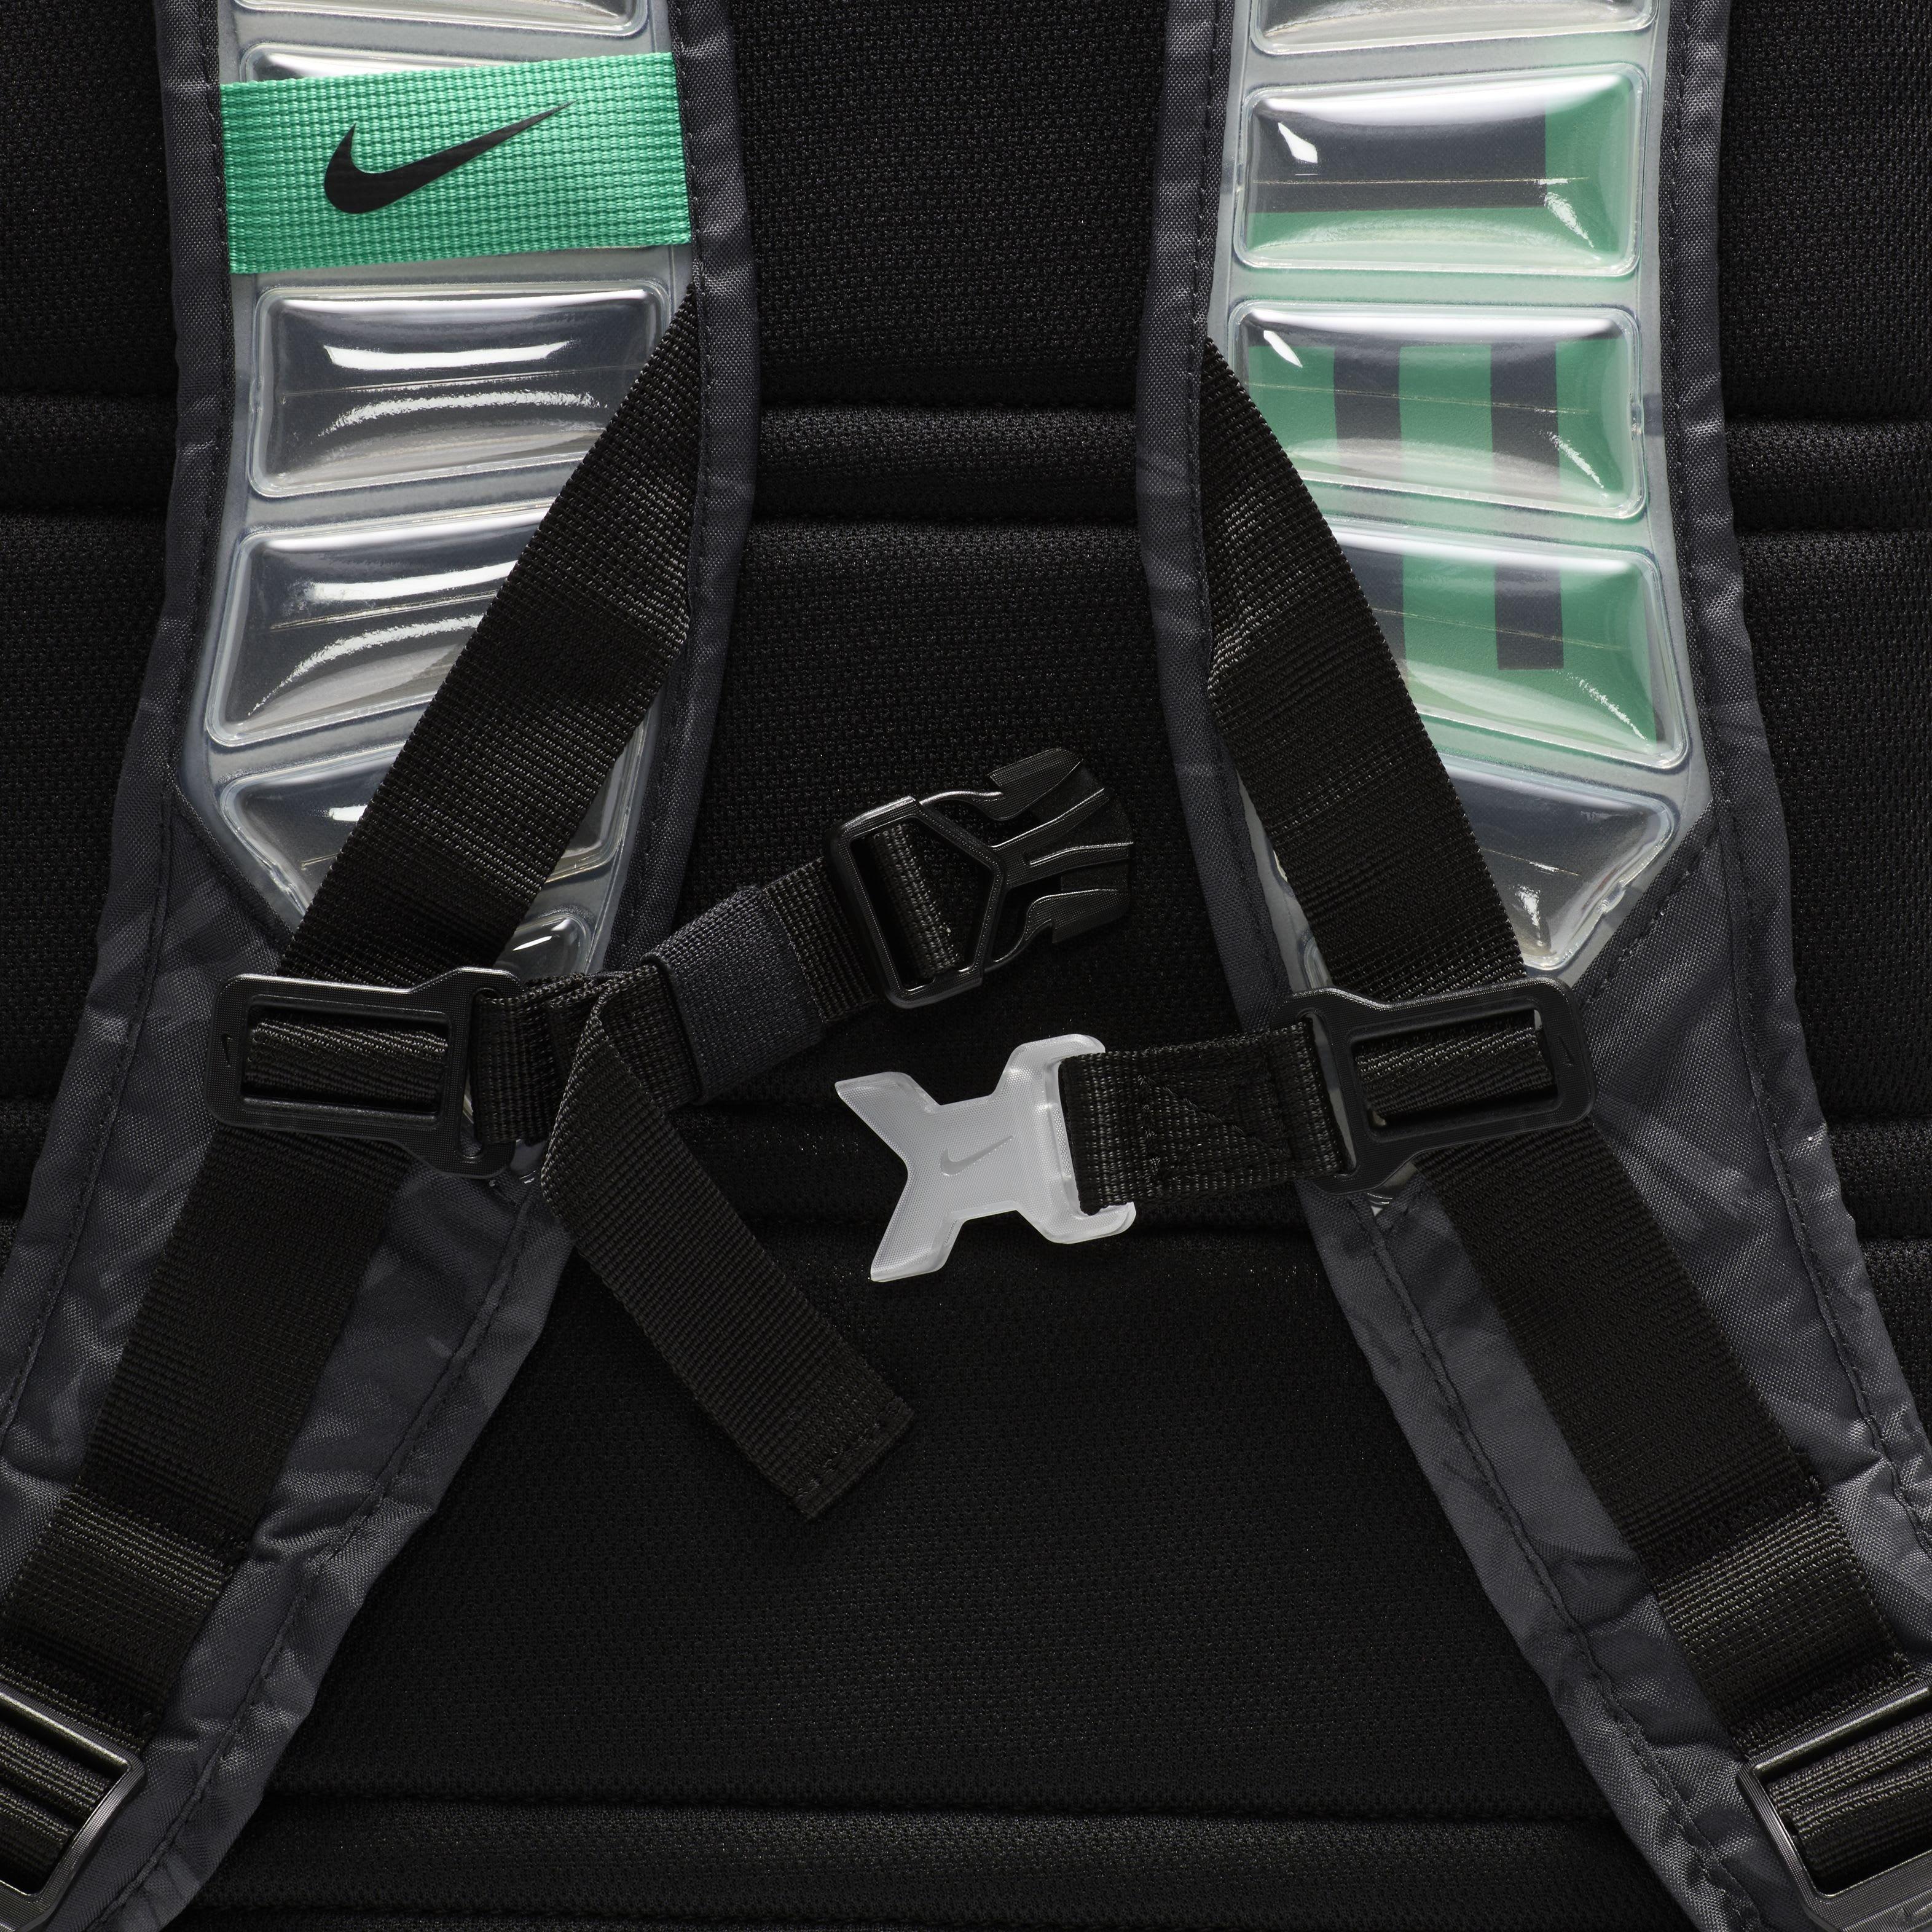 Nike Hoops Elite Backpack (32L).